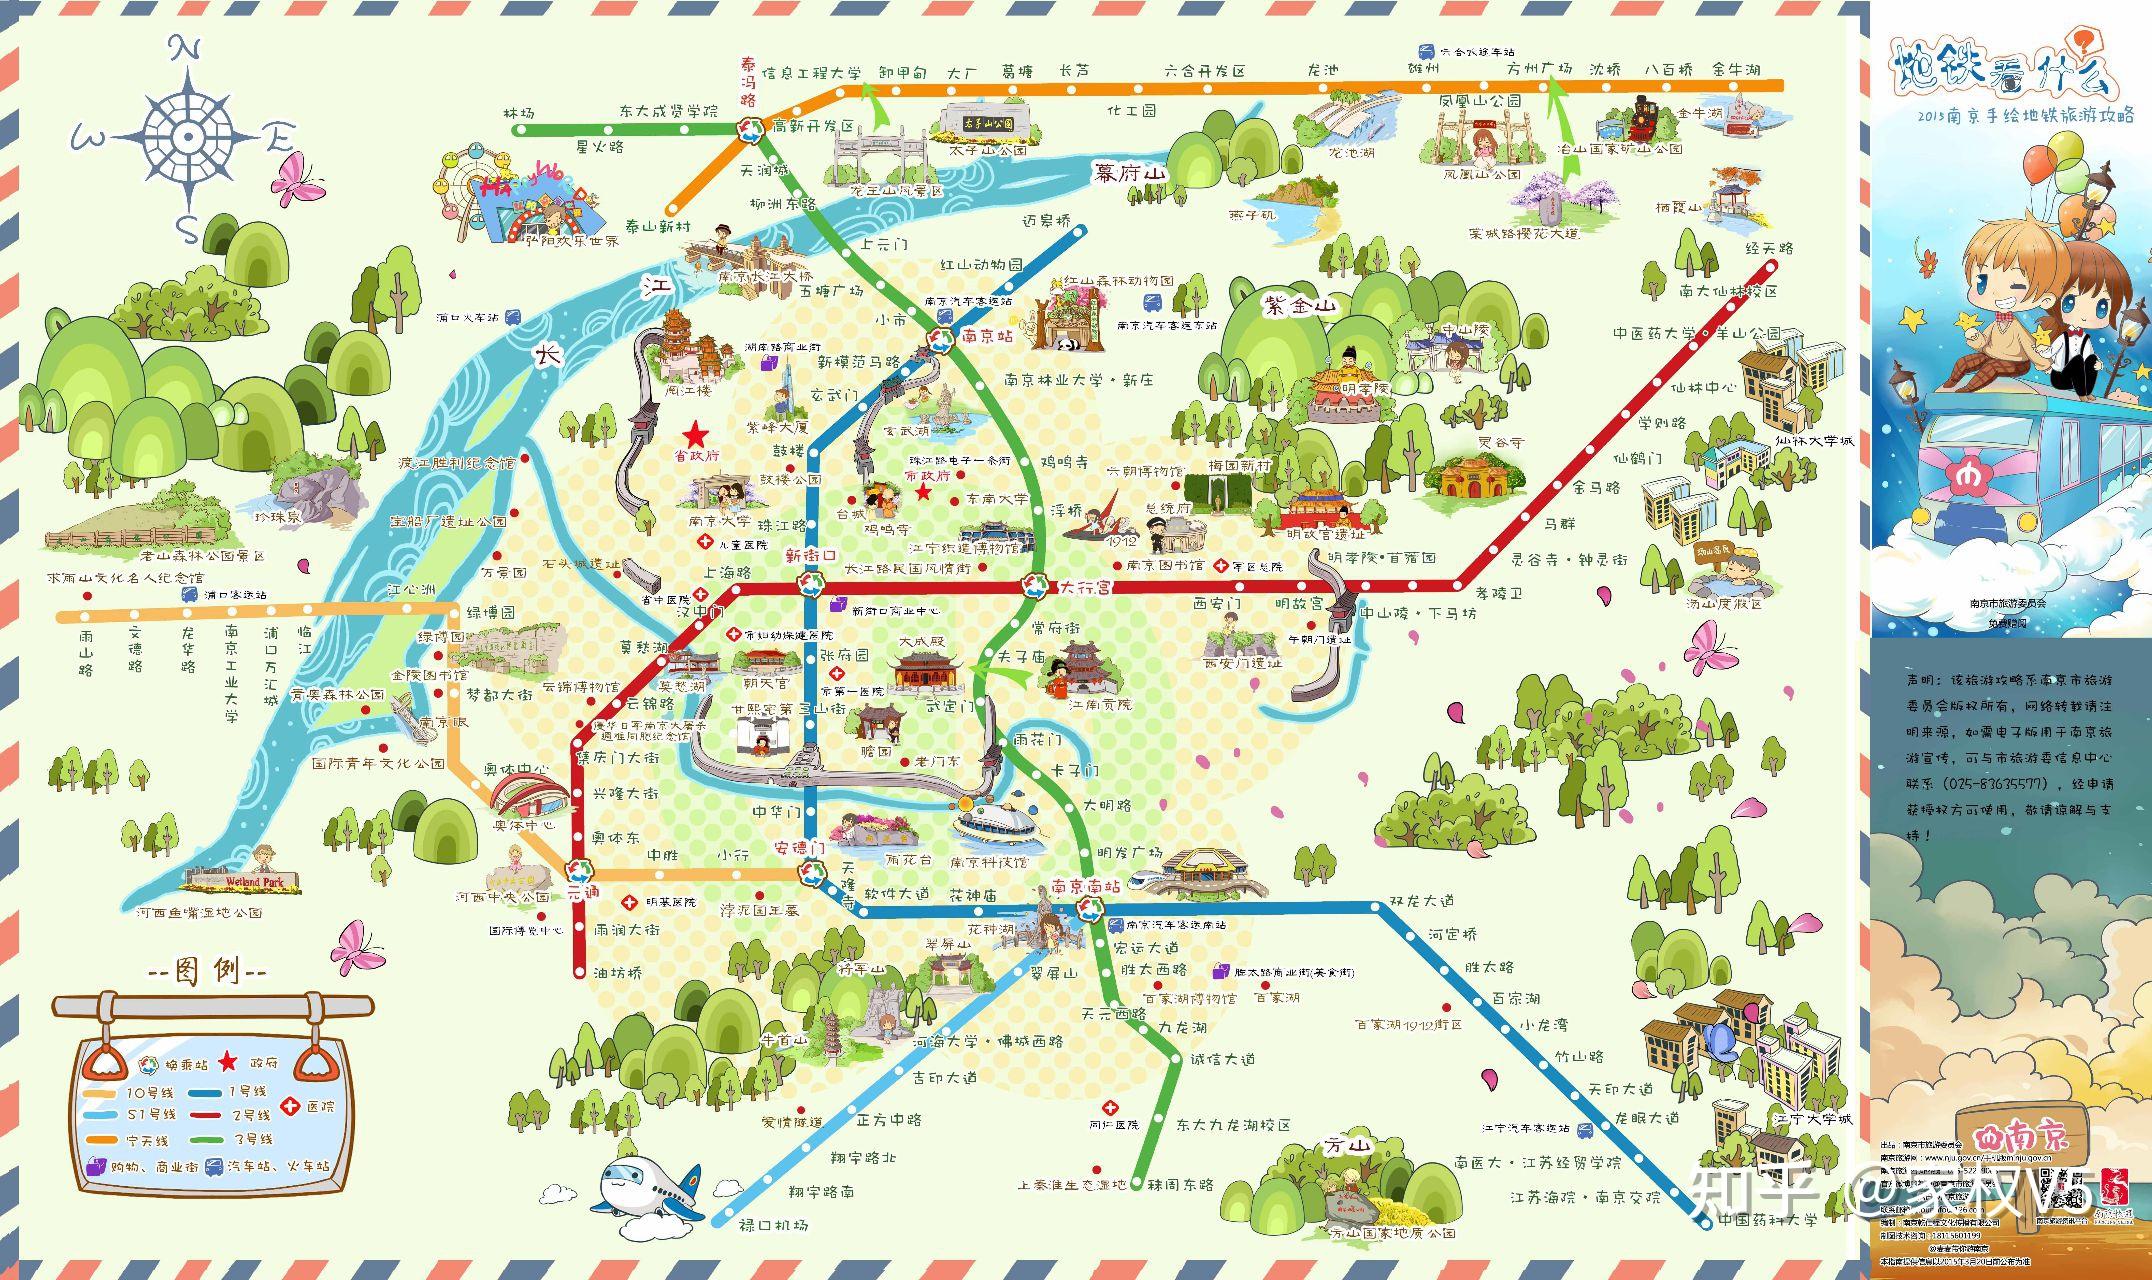 图一是南京手绘地铁旅游攻略,图二是南京市主城区旅游景点示意图